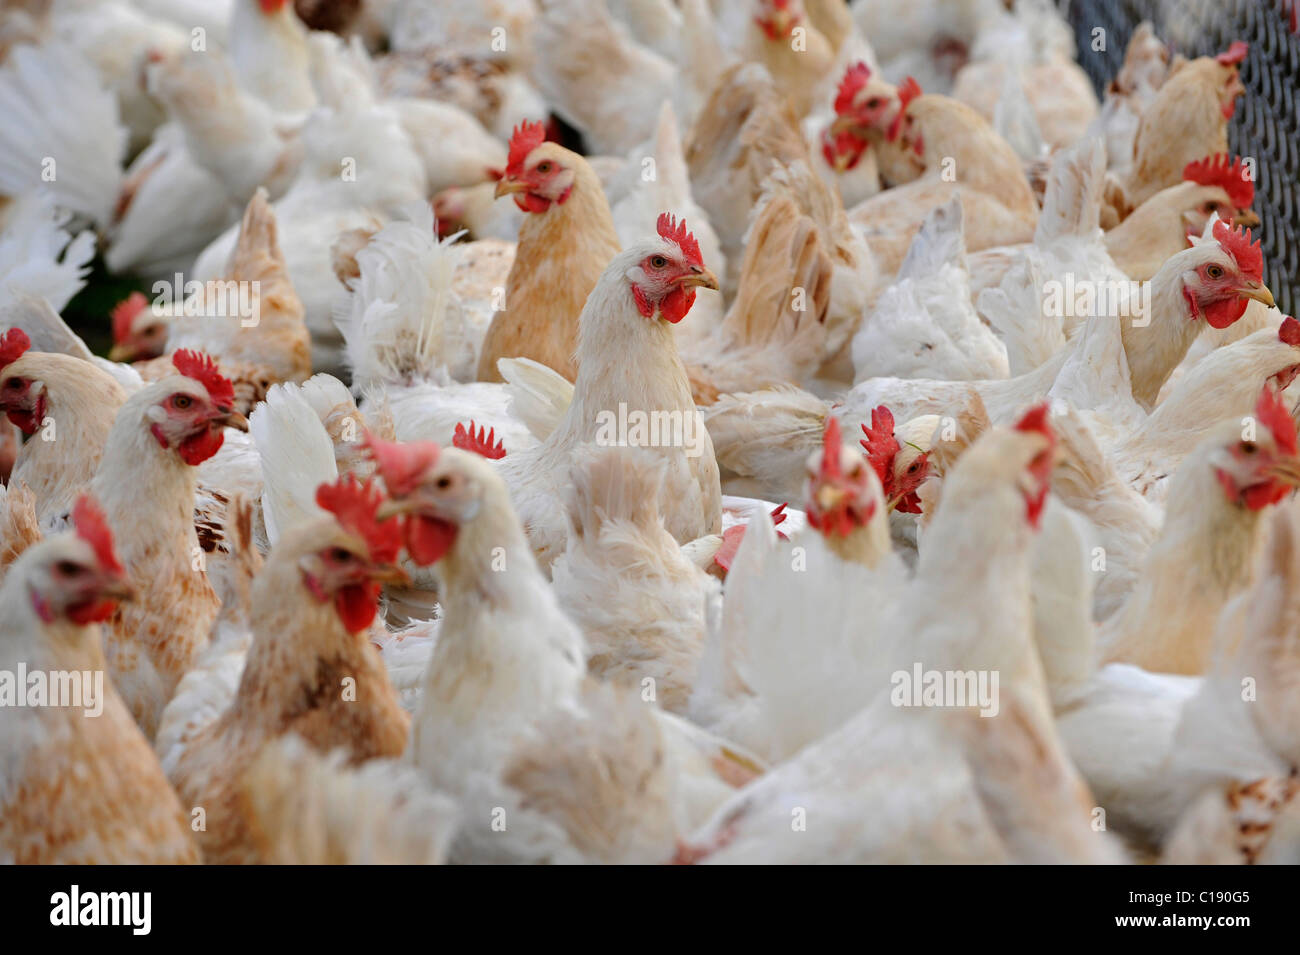 Los pollos, aves de corral, en la libre-gama granja avícola Foto de stock